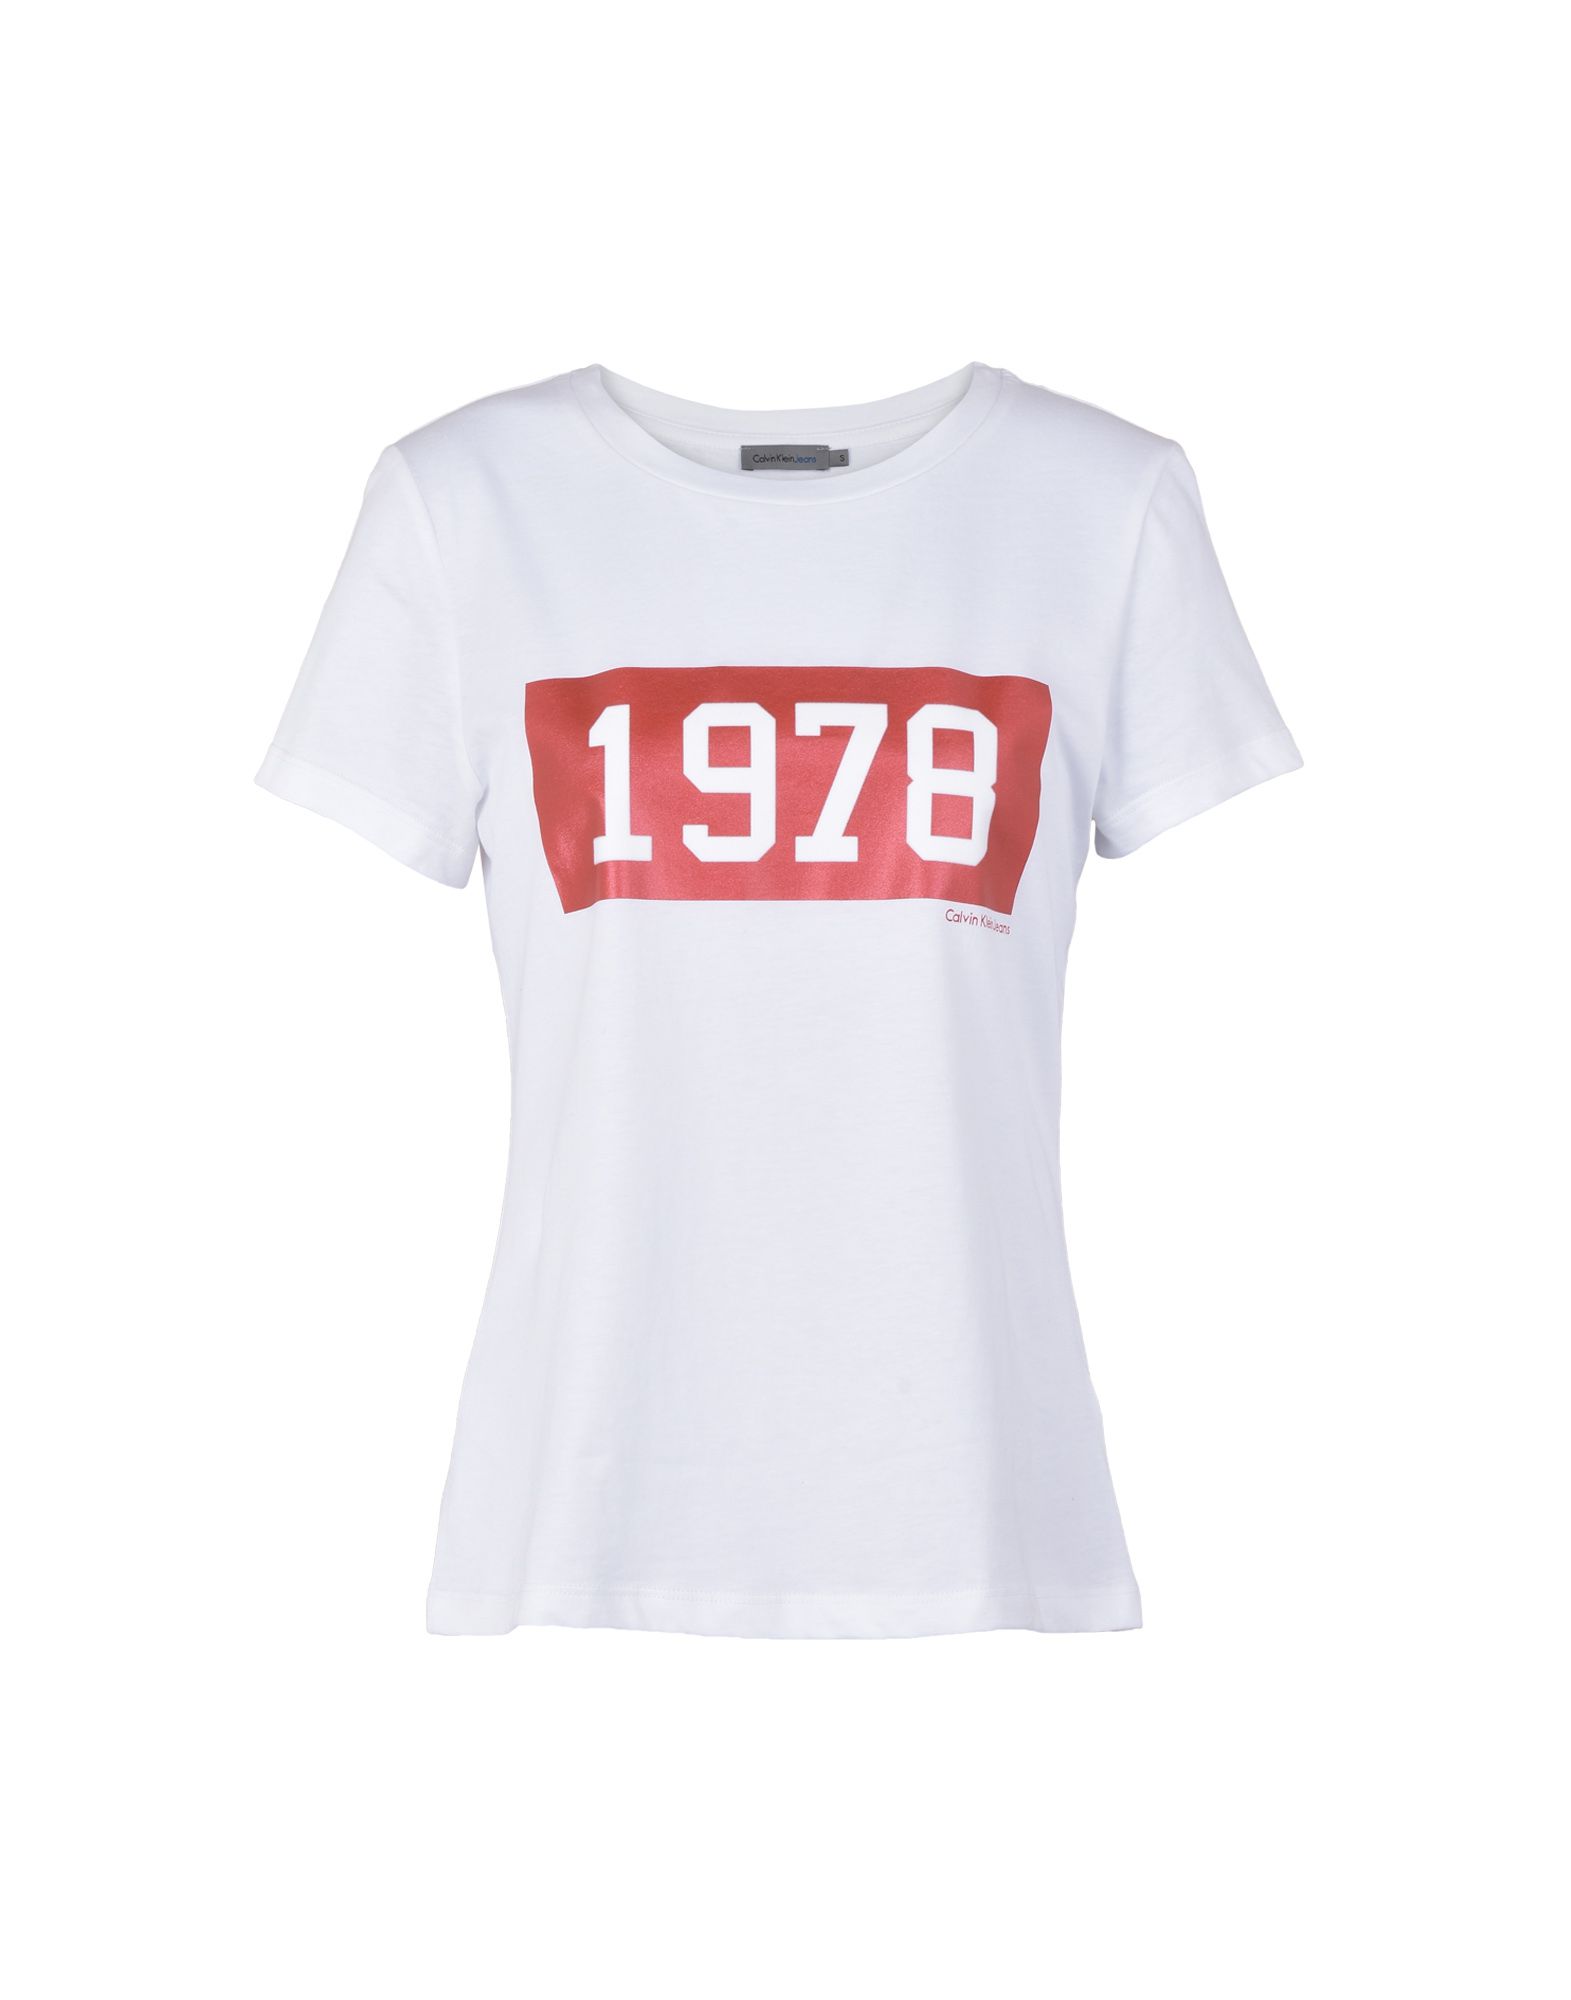 calvin klein t shirt 1978